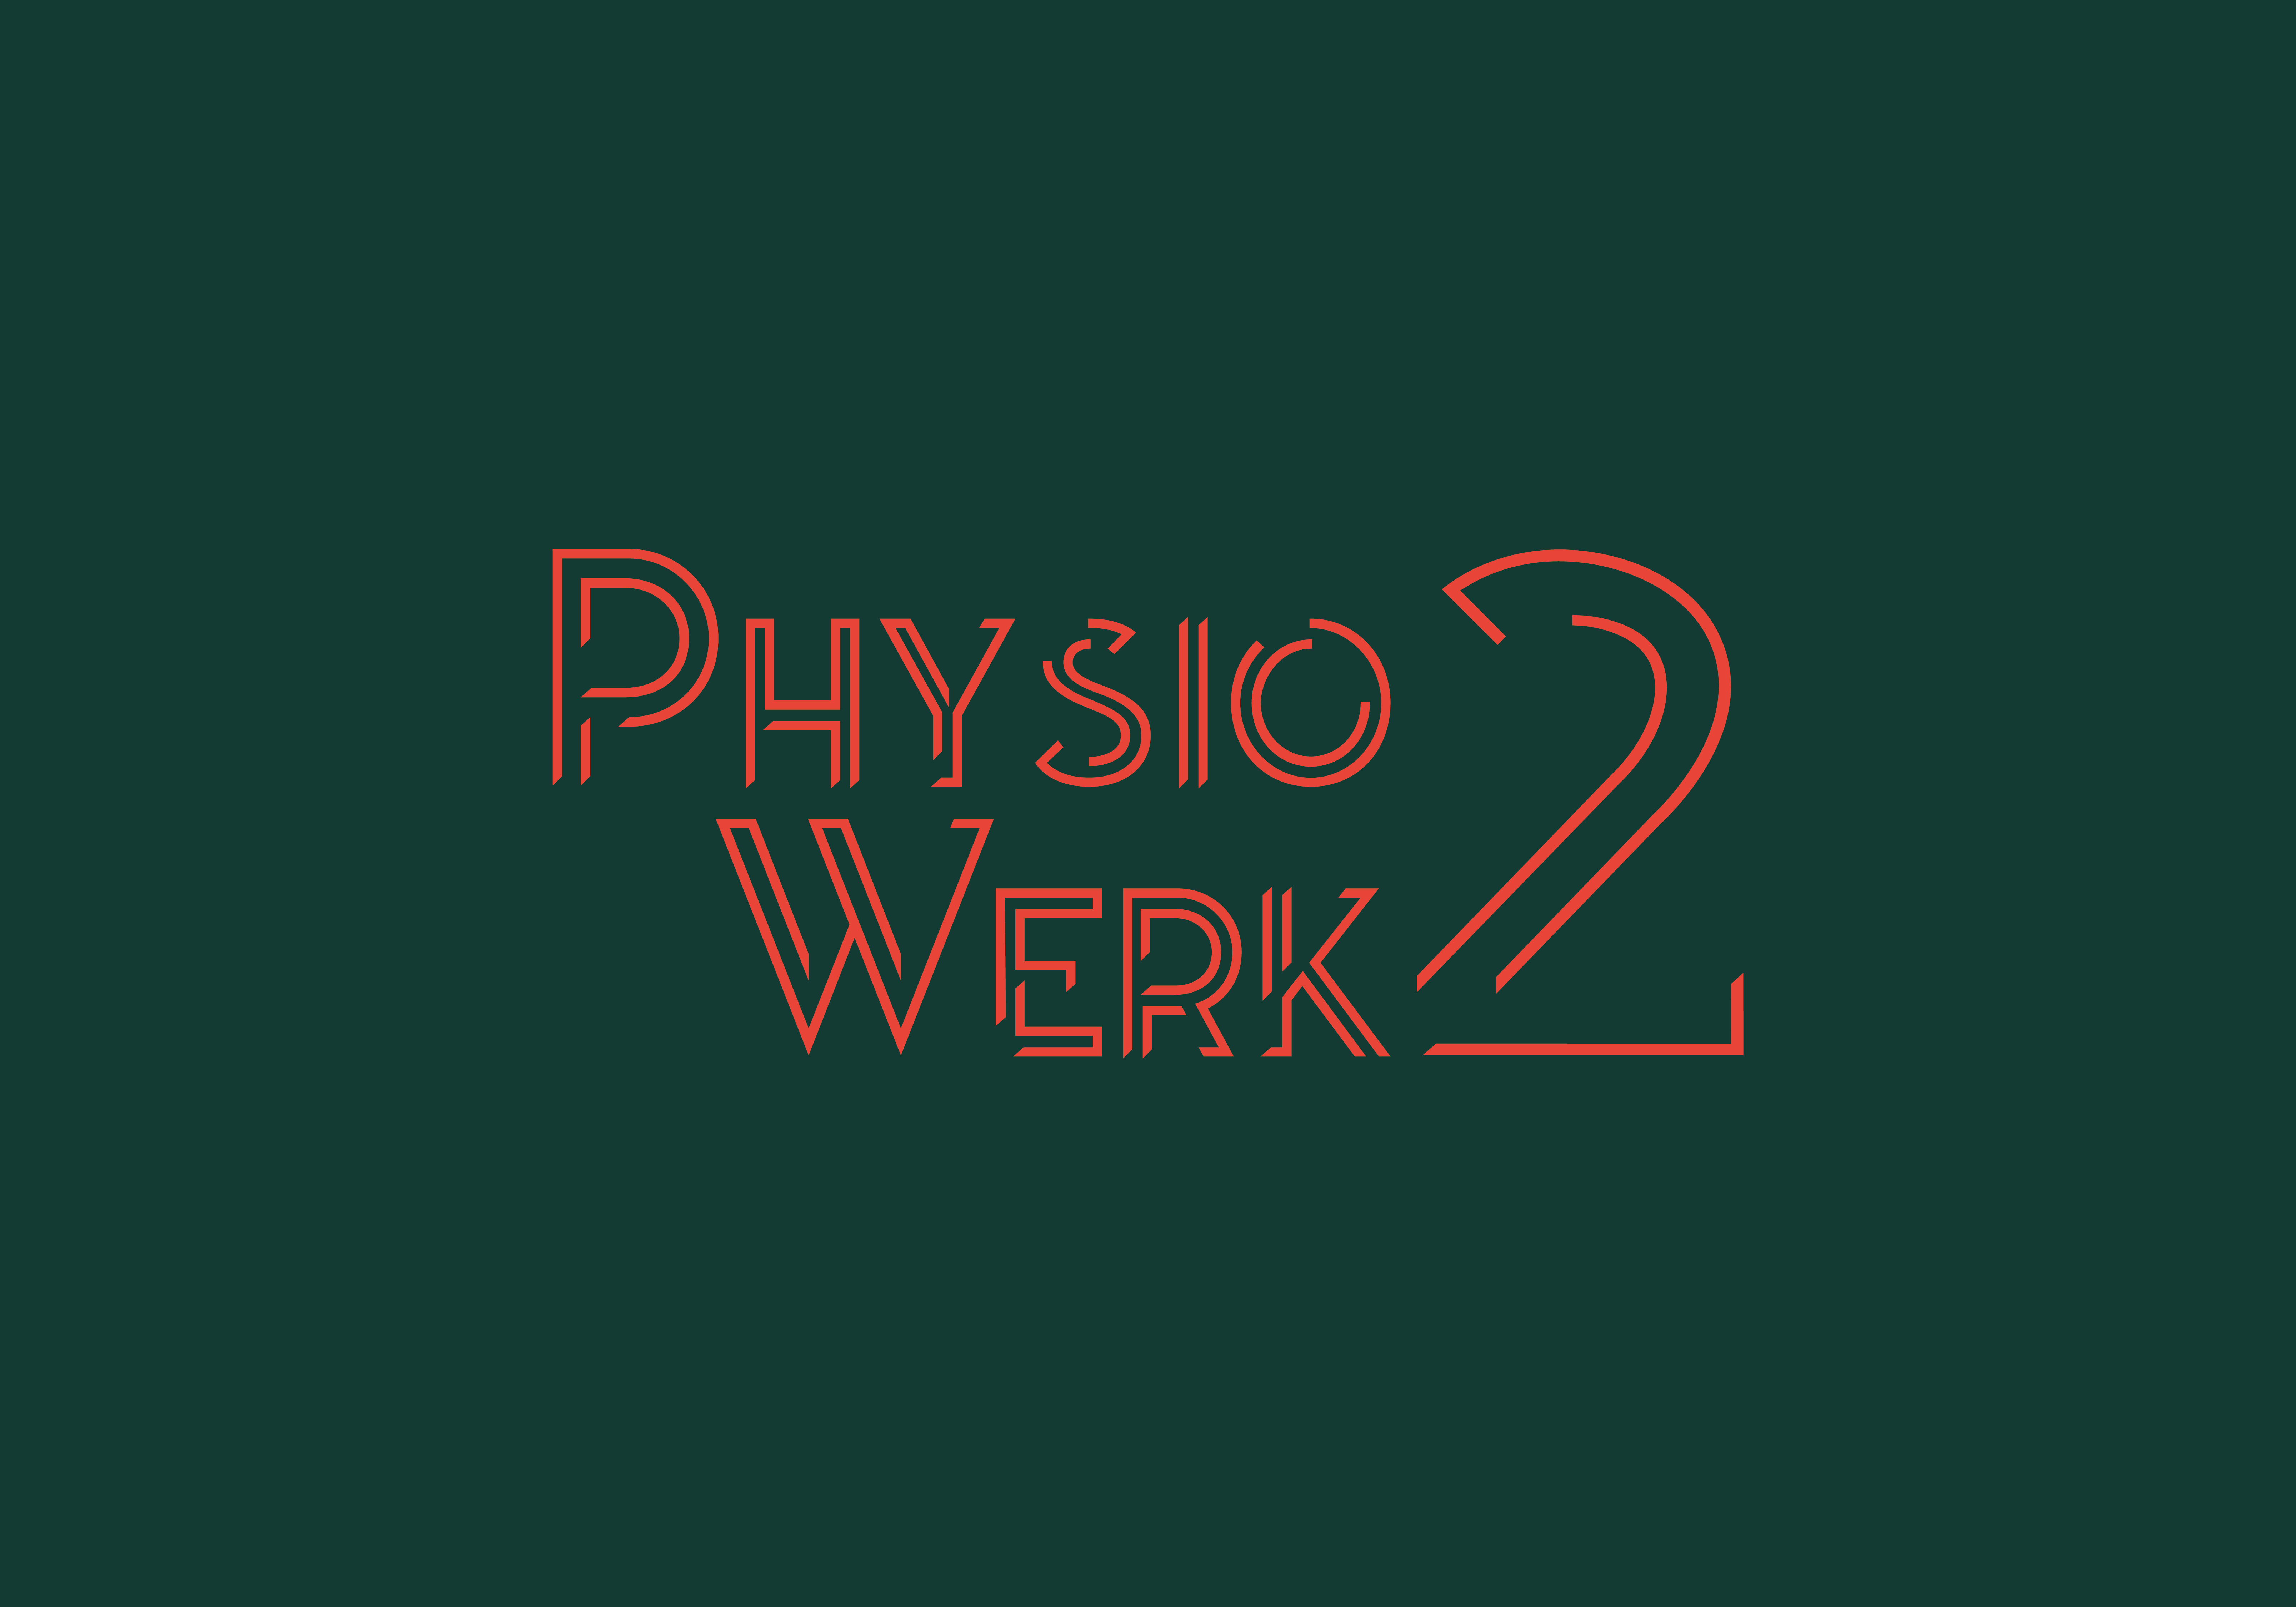 Das Sekundärlogo von PhysioWerk 2, in orange auf grünem Hintergrund.